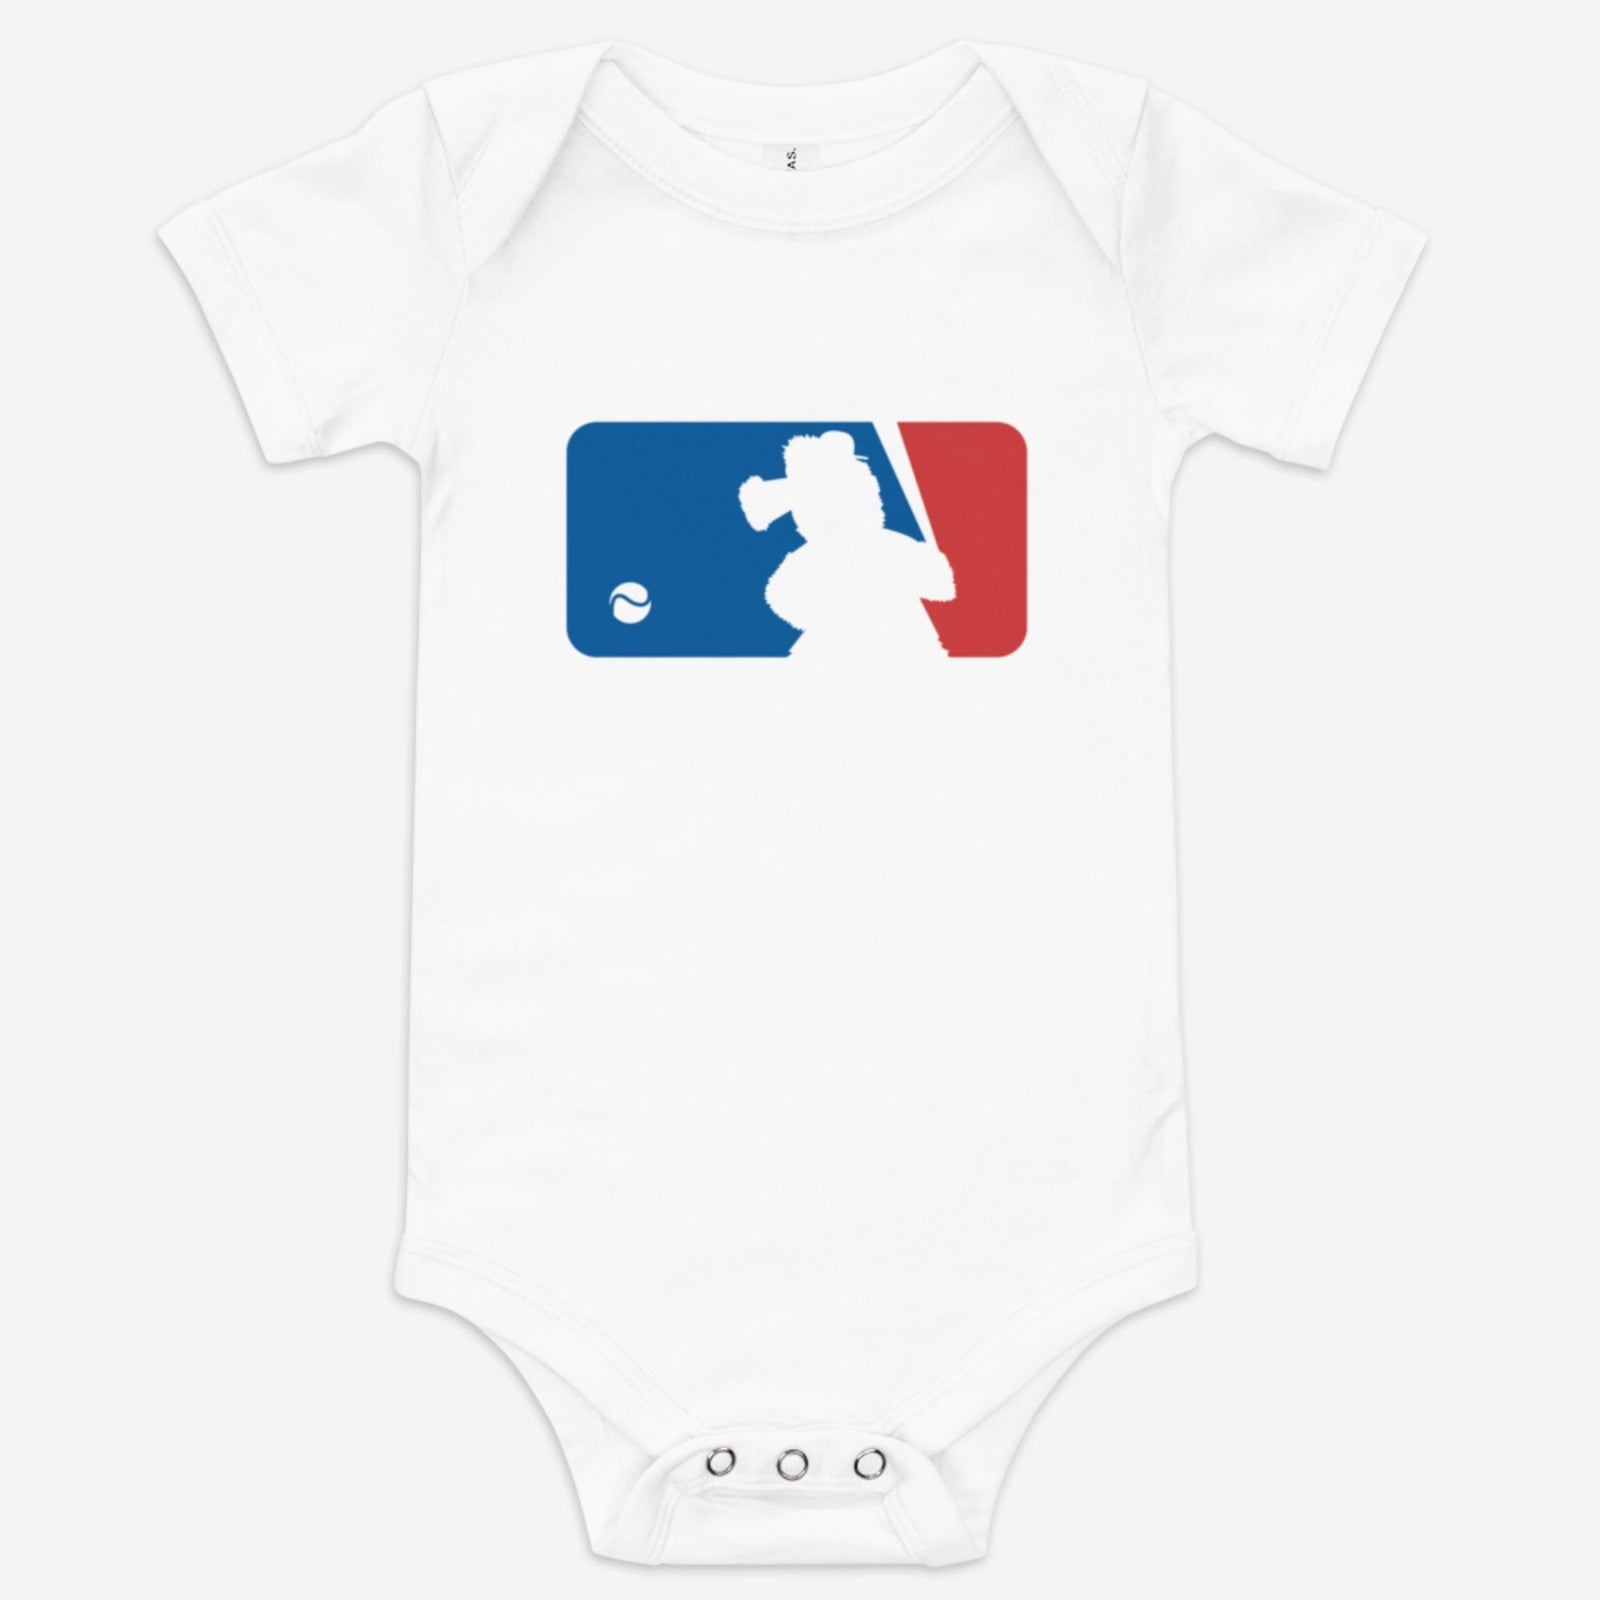 "Major Baseball Phan" Baby Onesie